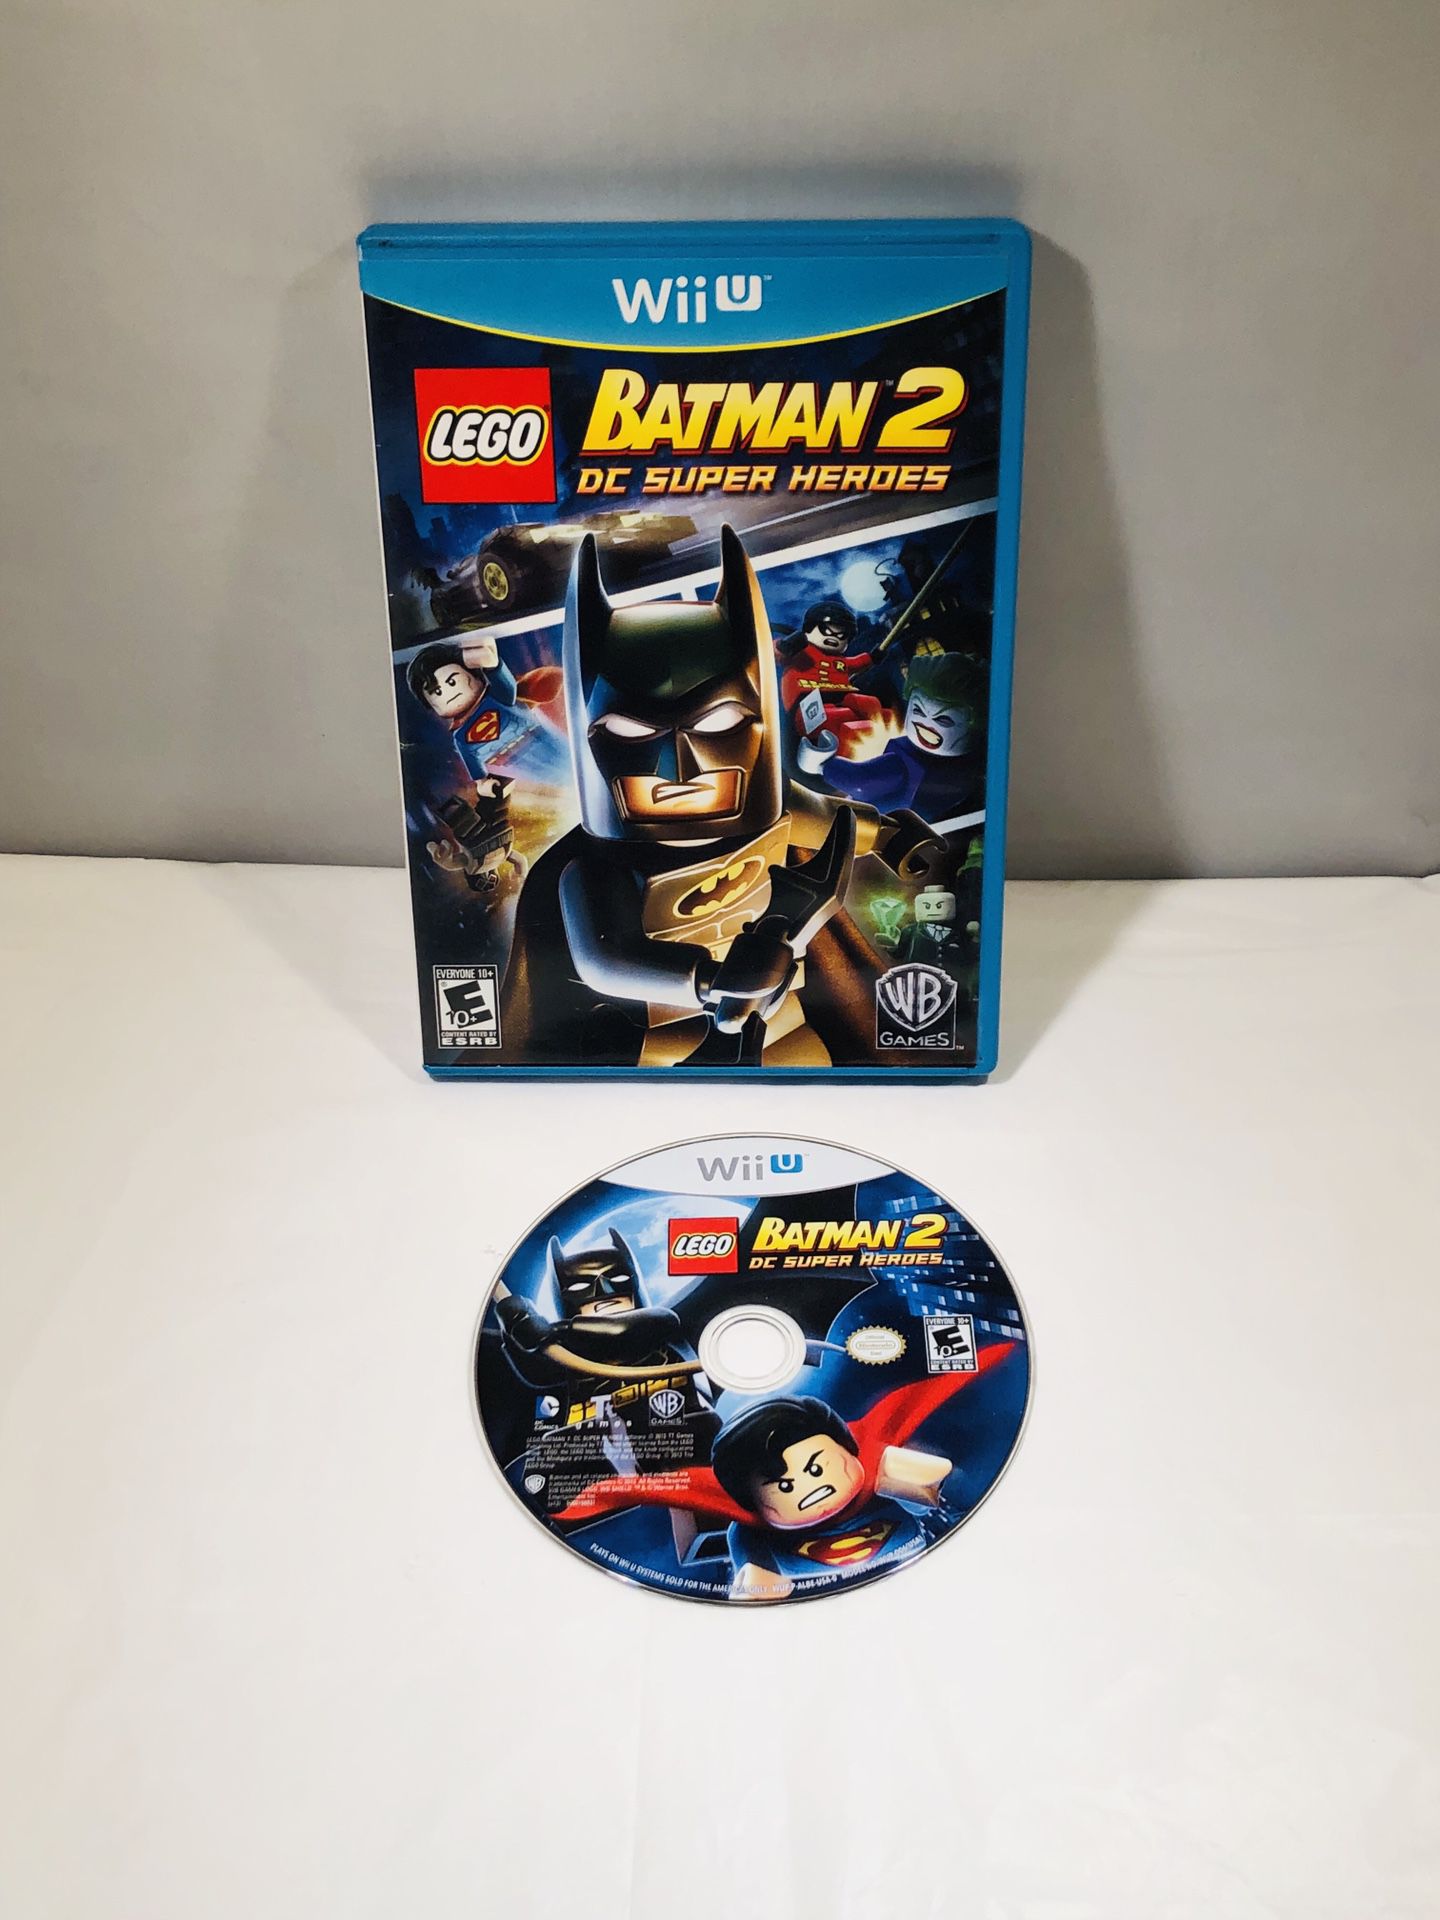 Batman 2 dc super heroes Nintendo Wii U no manual